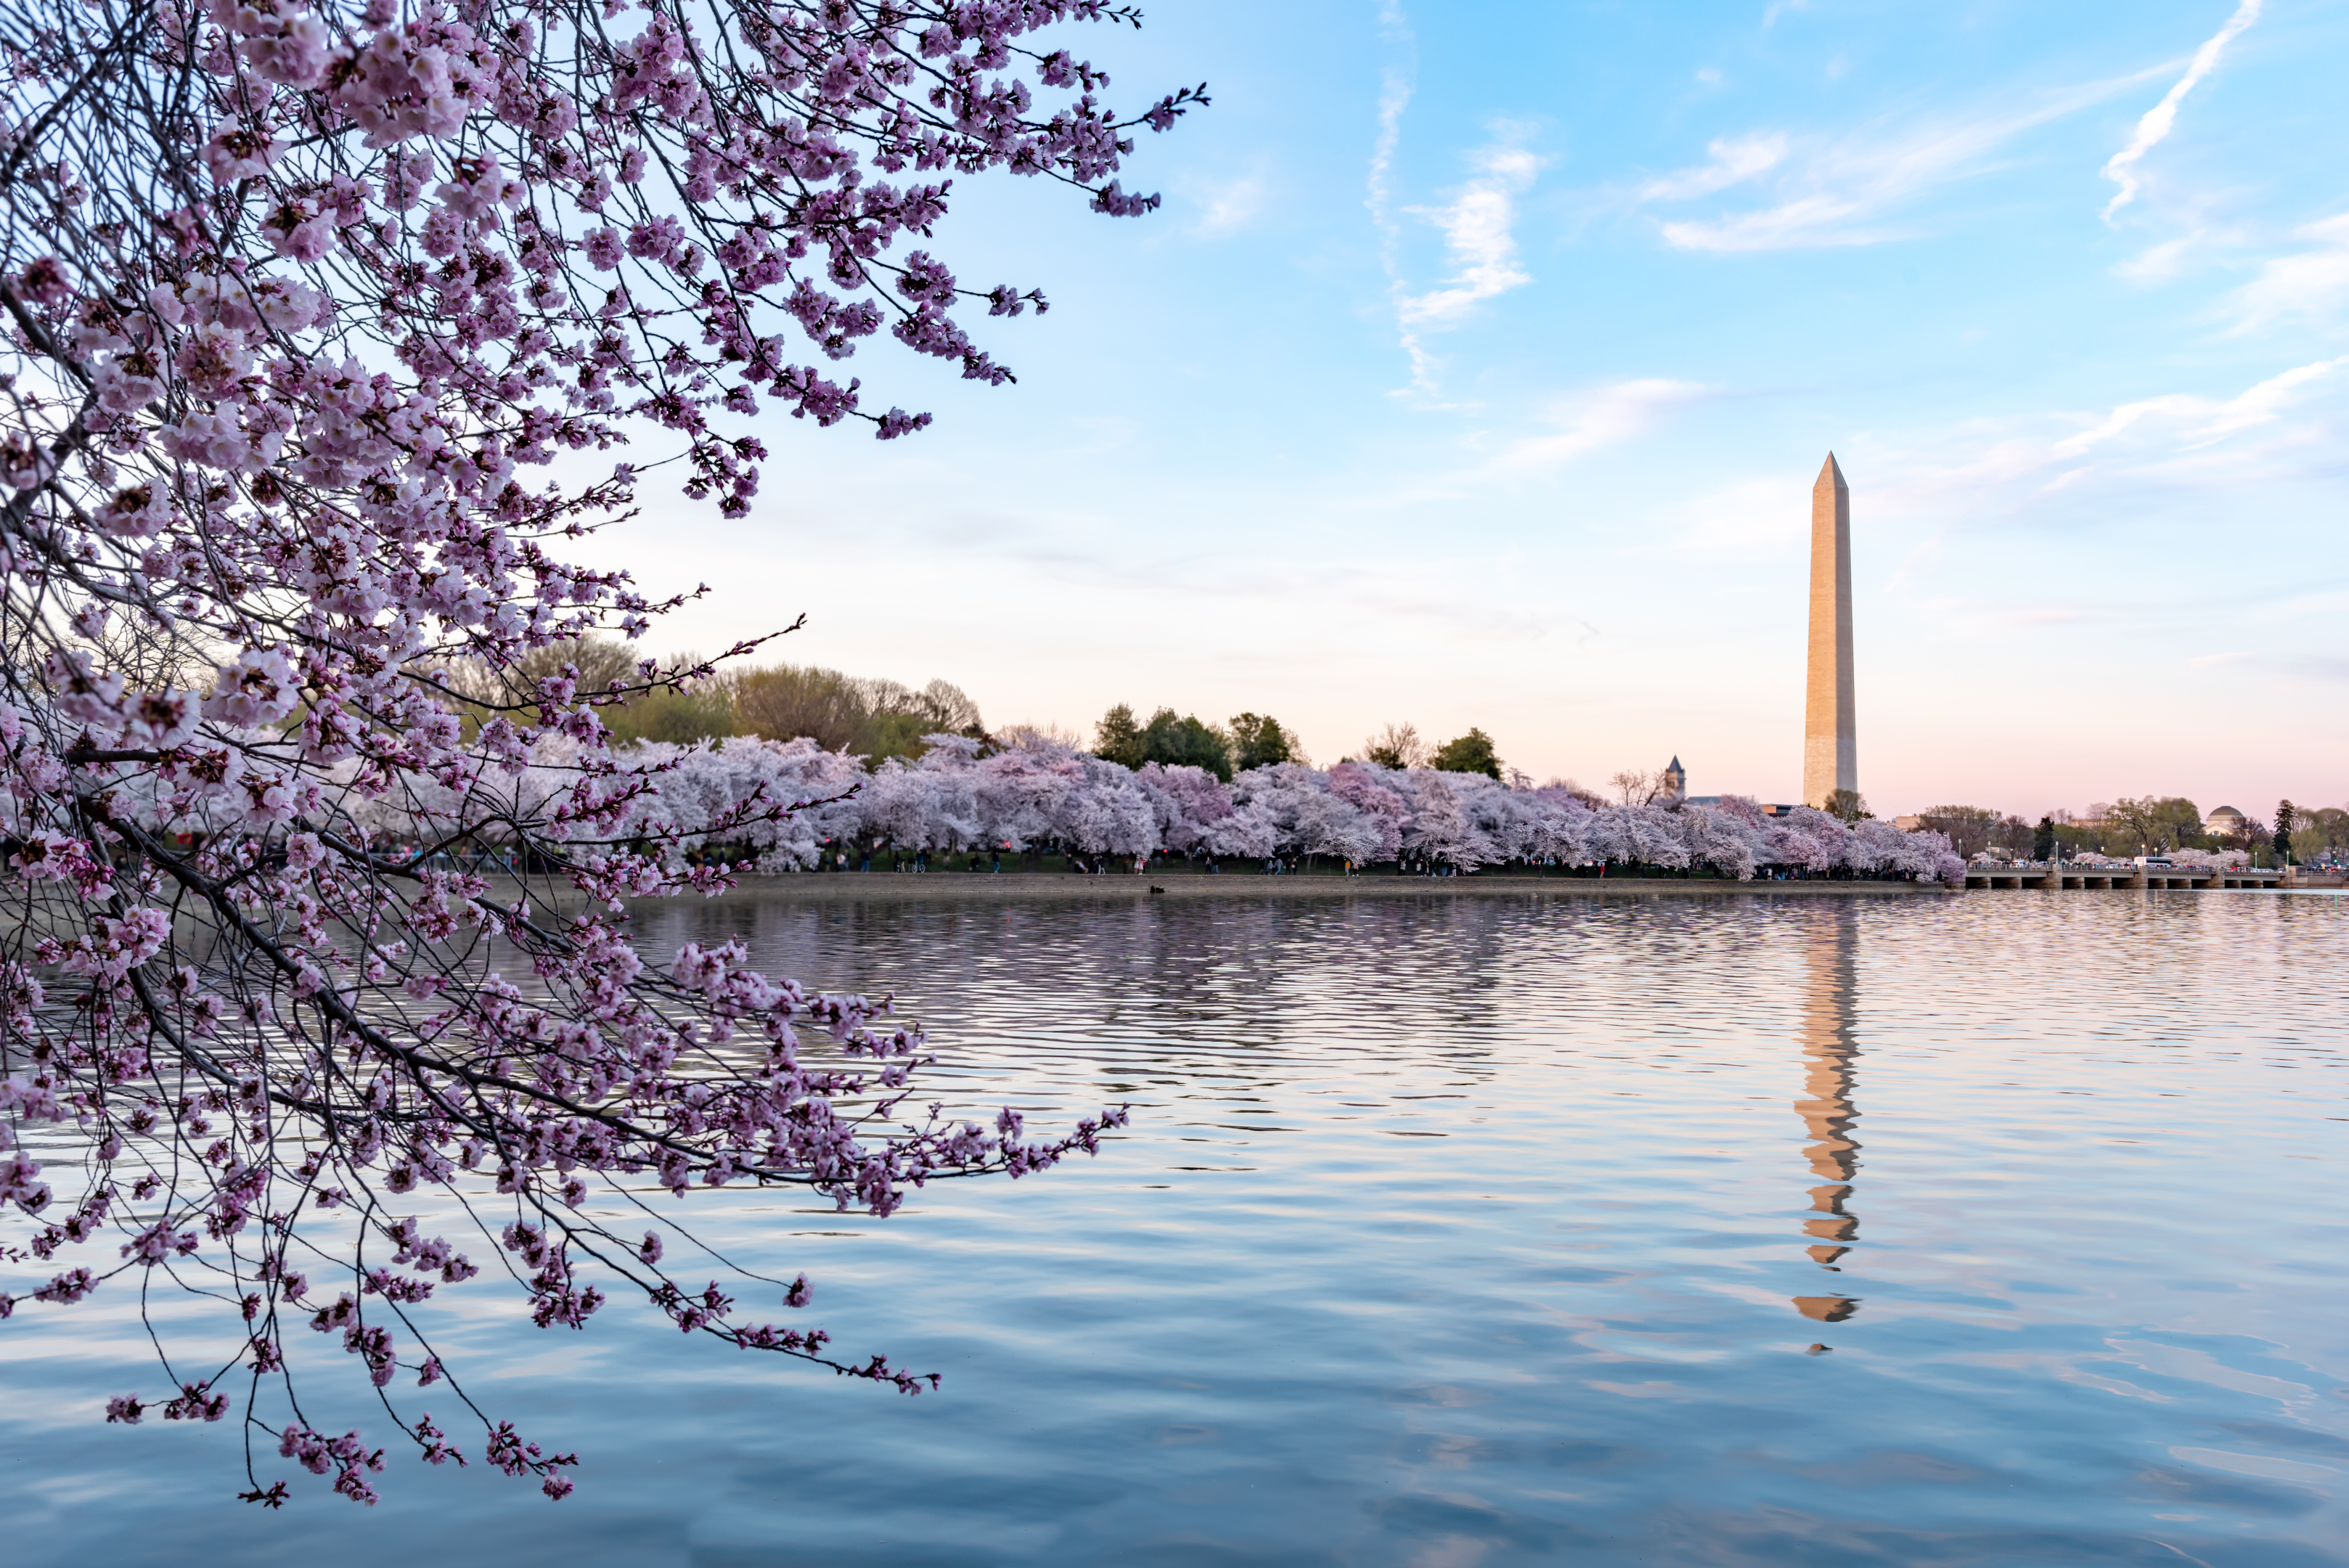 Ulusal Kiraz Çiçeği Festivali sırasında Washington Anıtı